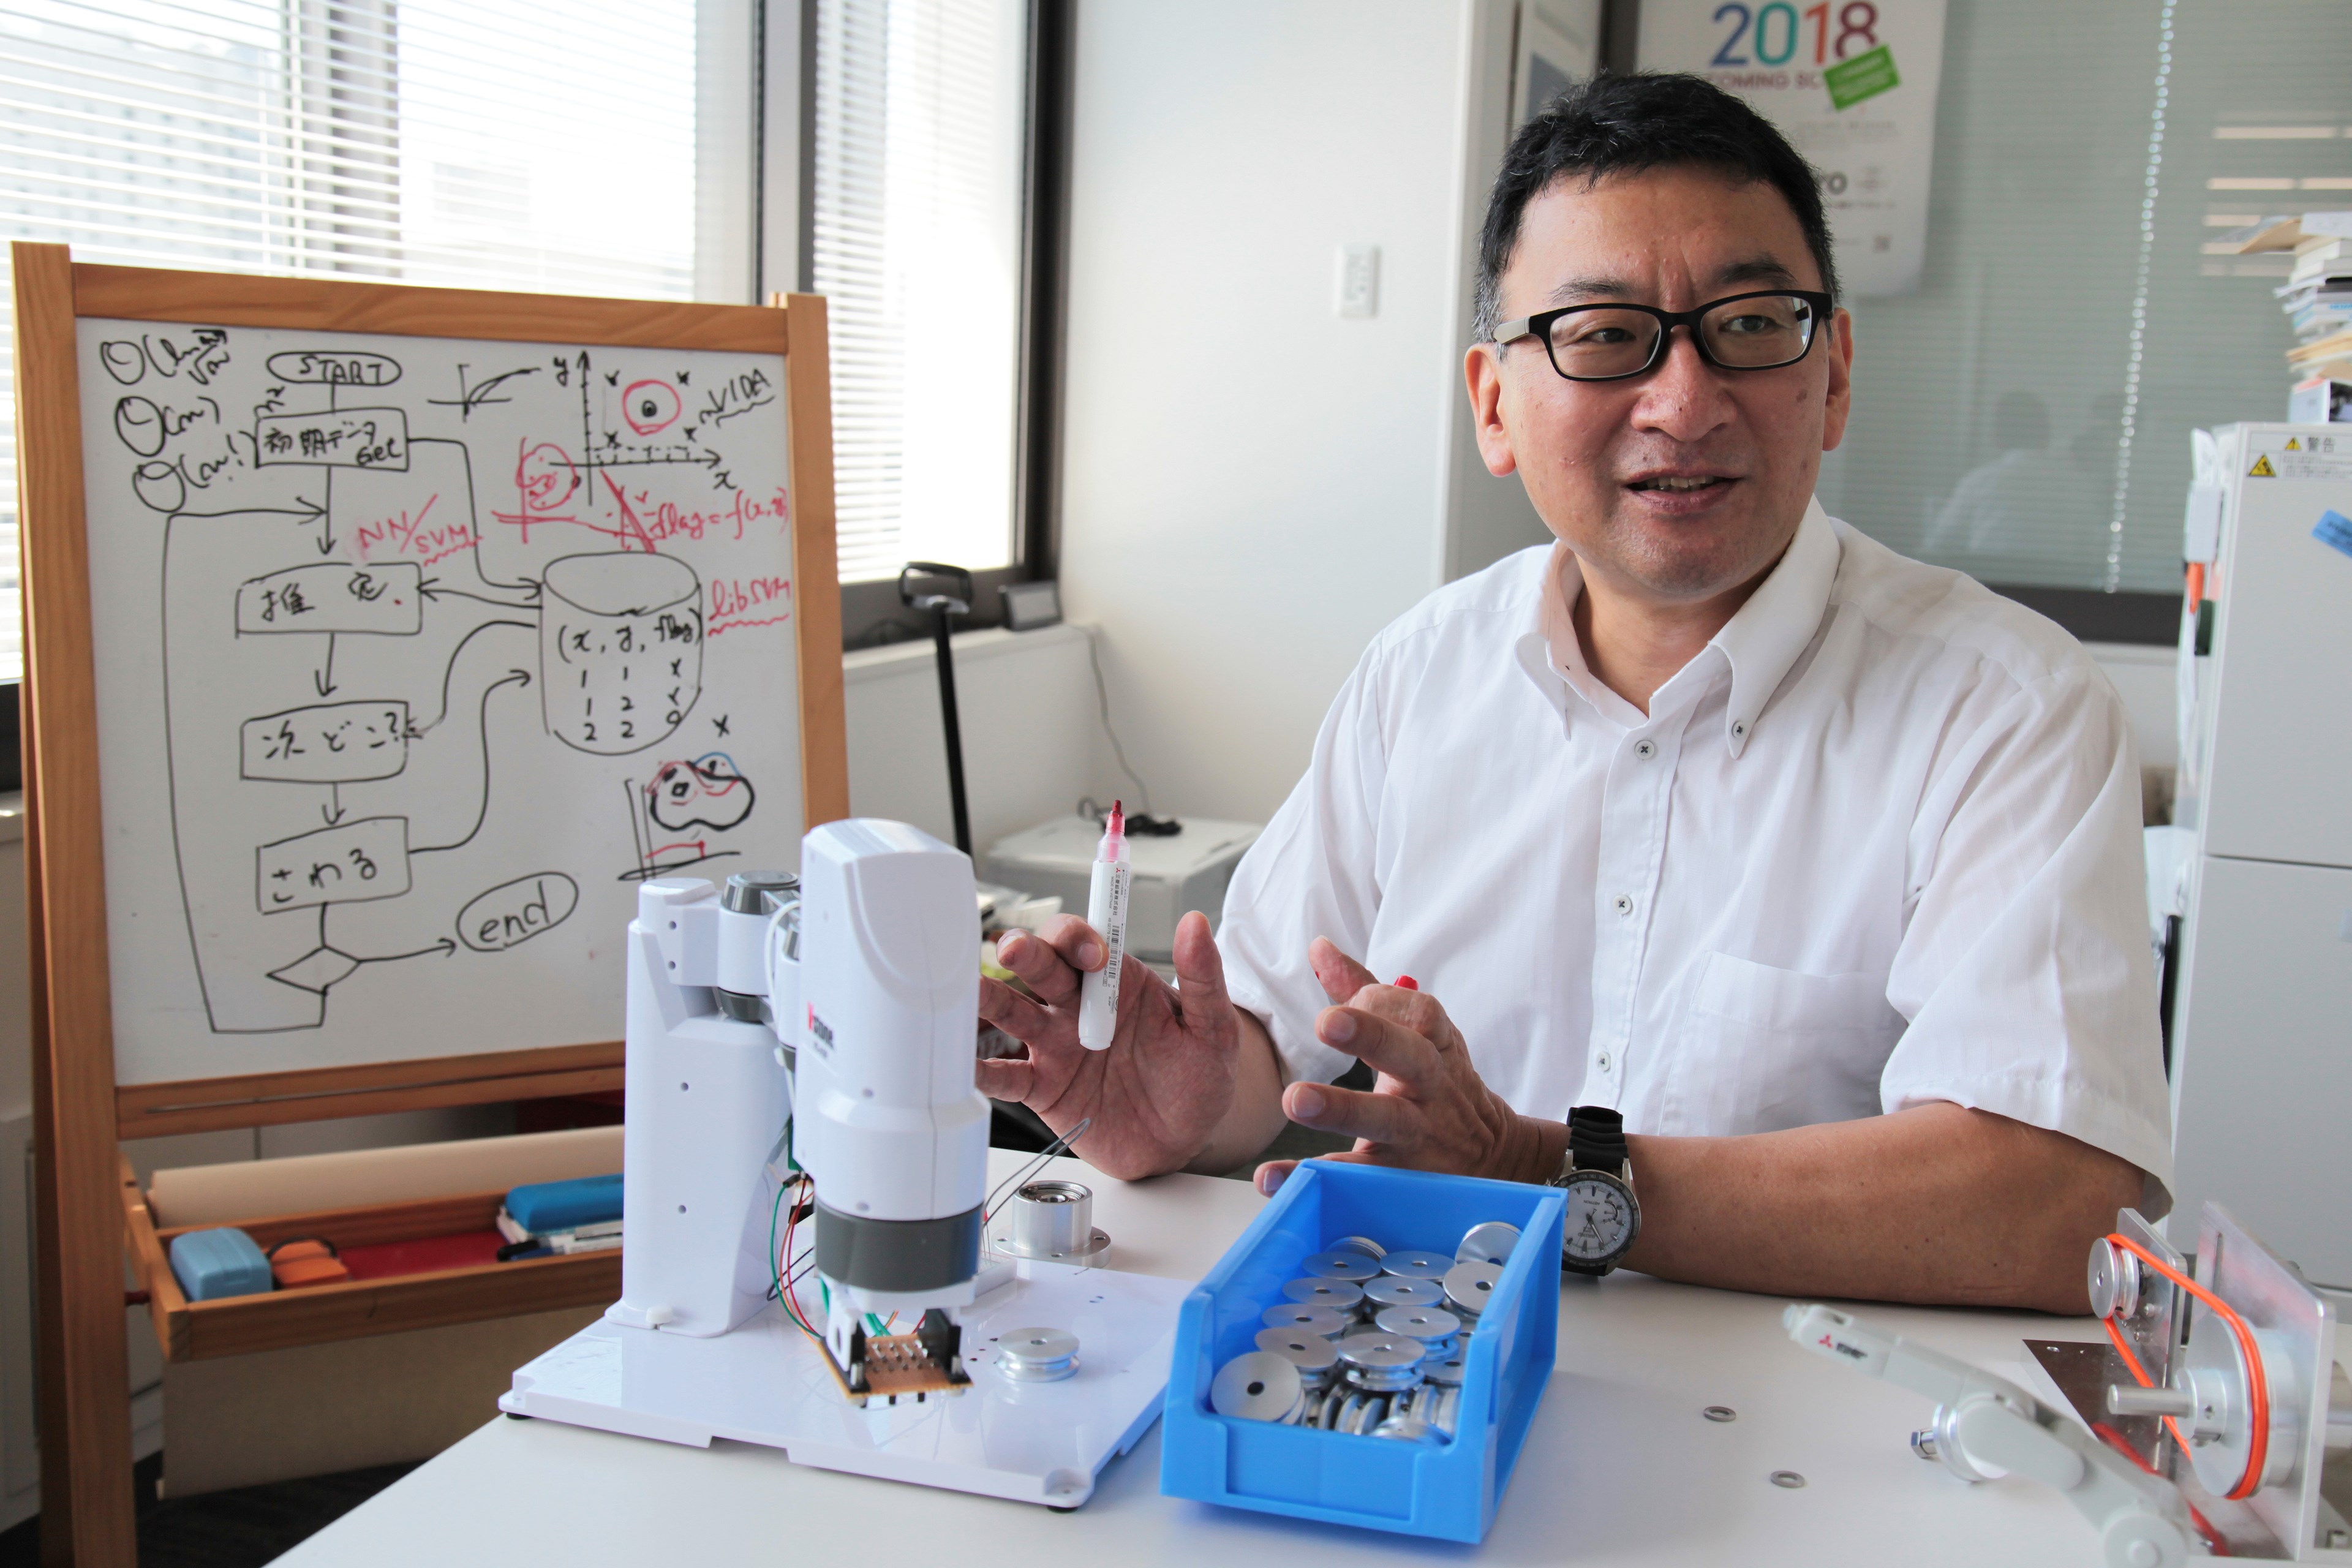 ロボット工学の将来について語る野田教授